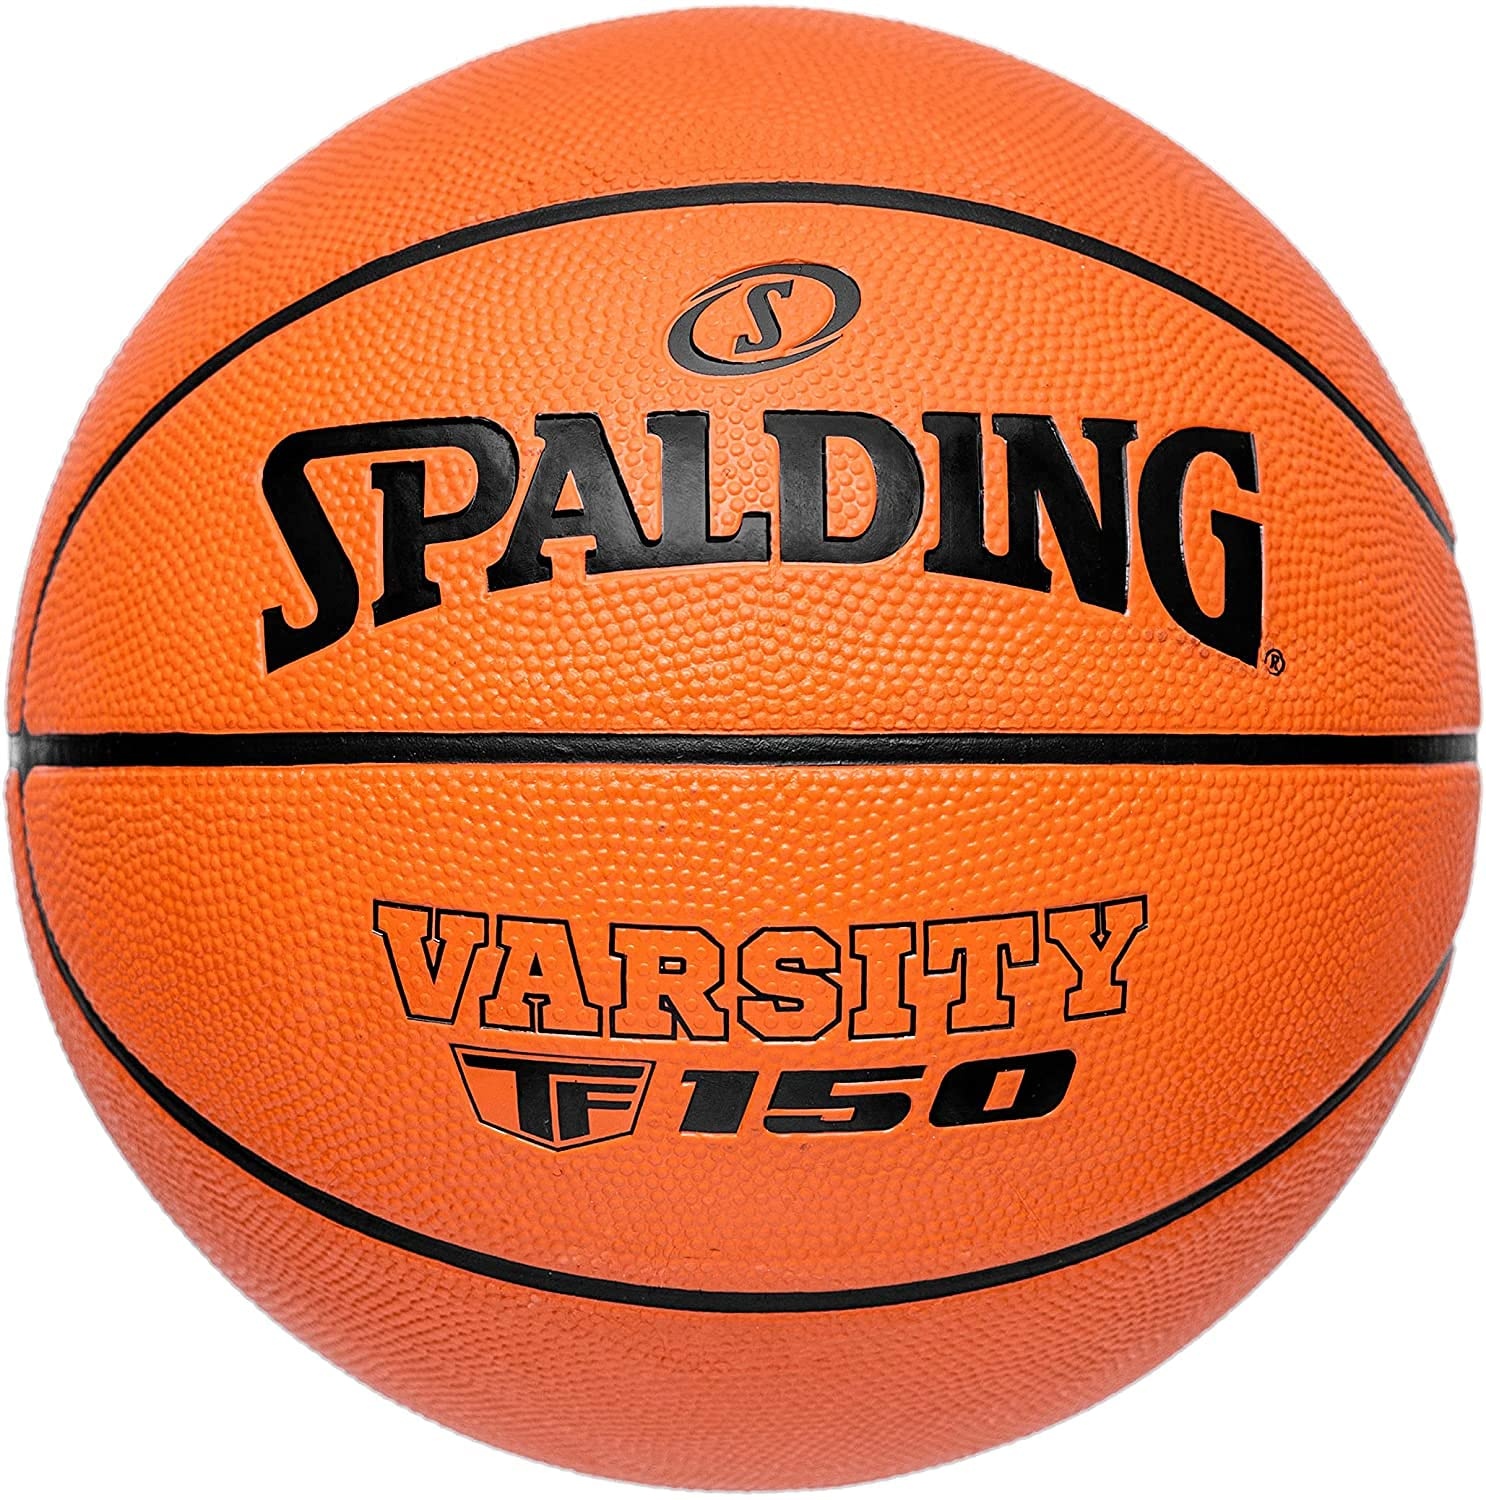 Spalding - Varsity TF-150 - Klassische Farbe - Basketballball - Größe 7 - Basketball - Zertifizierter Ball - Material: Gummi - Outdoor - rutschfest - Hervorragender Grip - Sehr widerstandsfähig